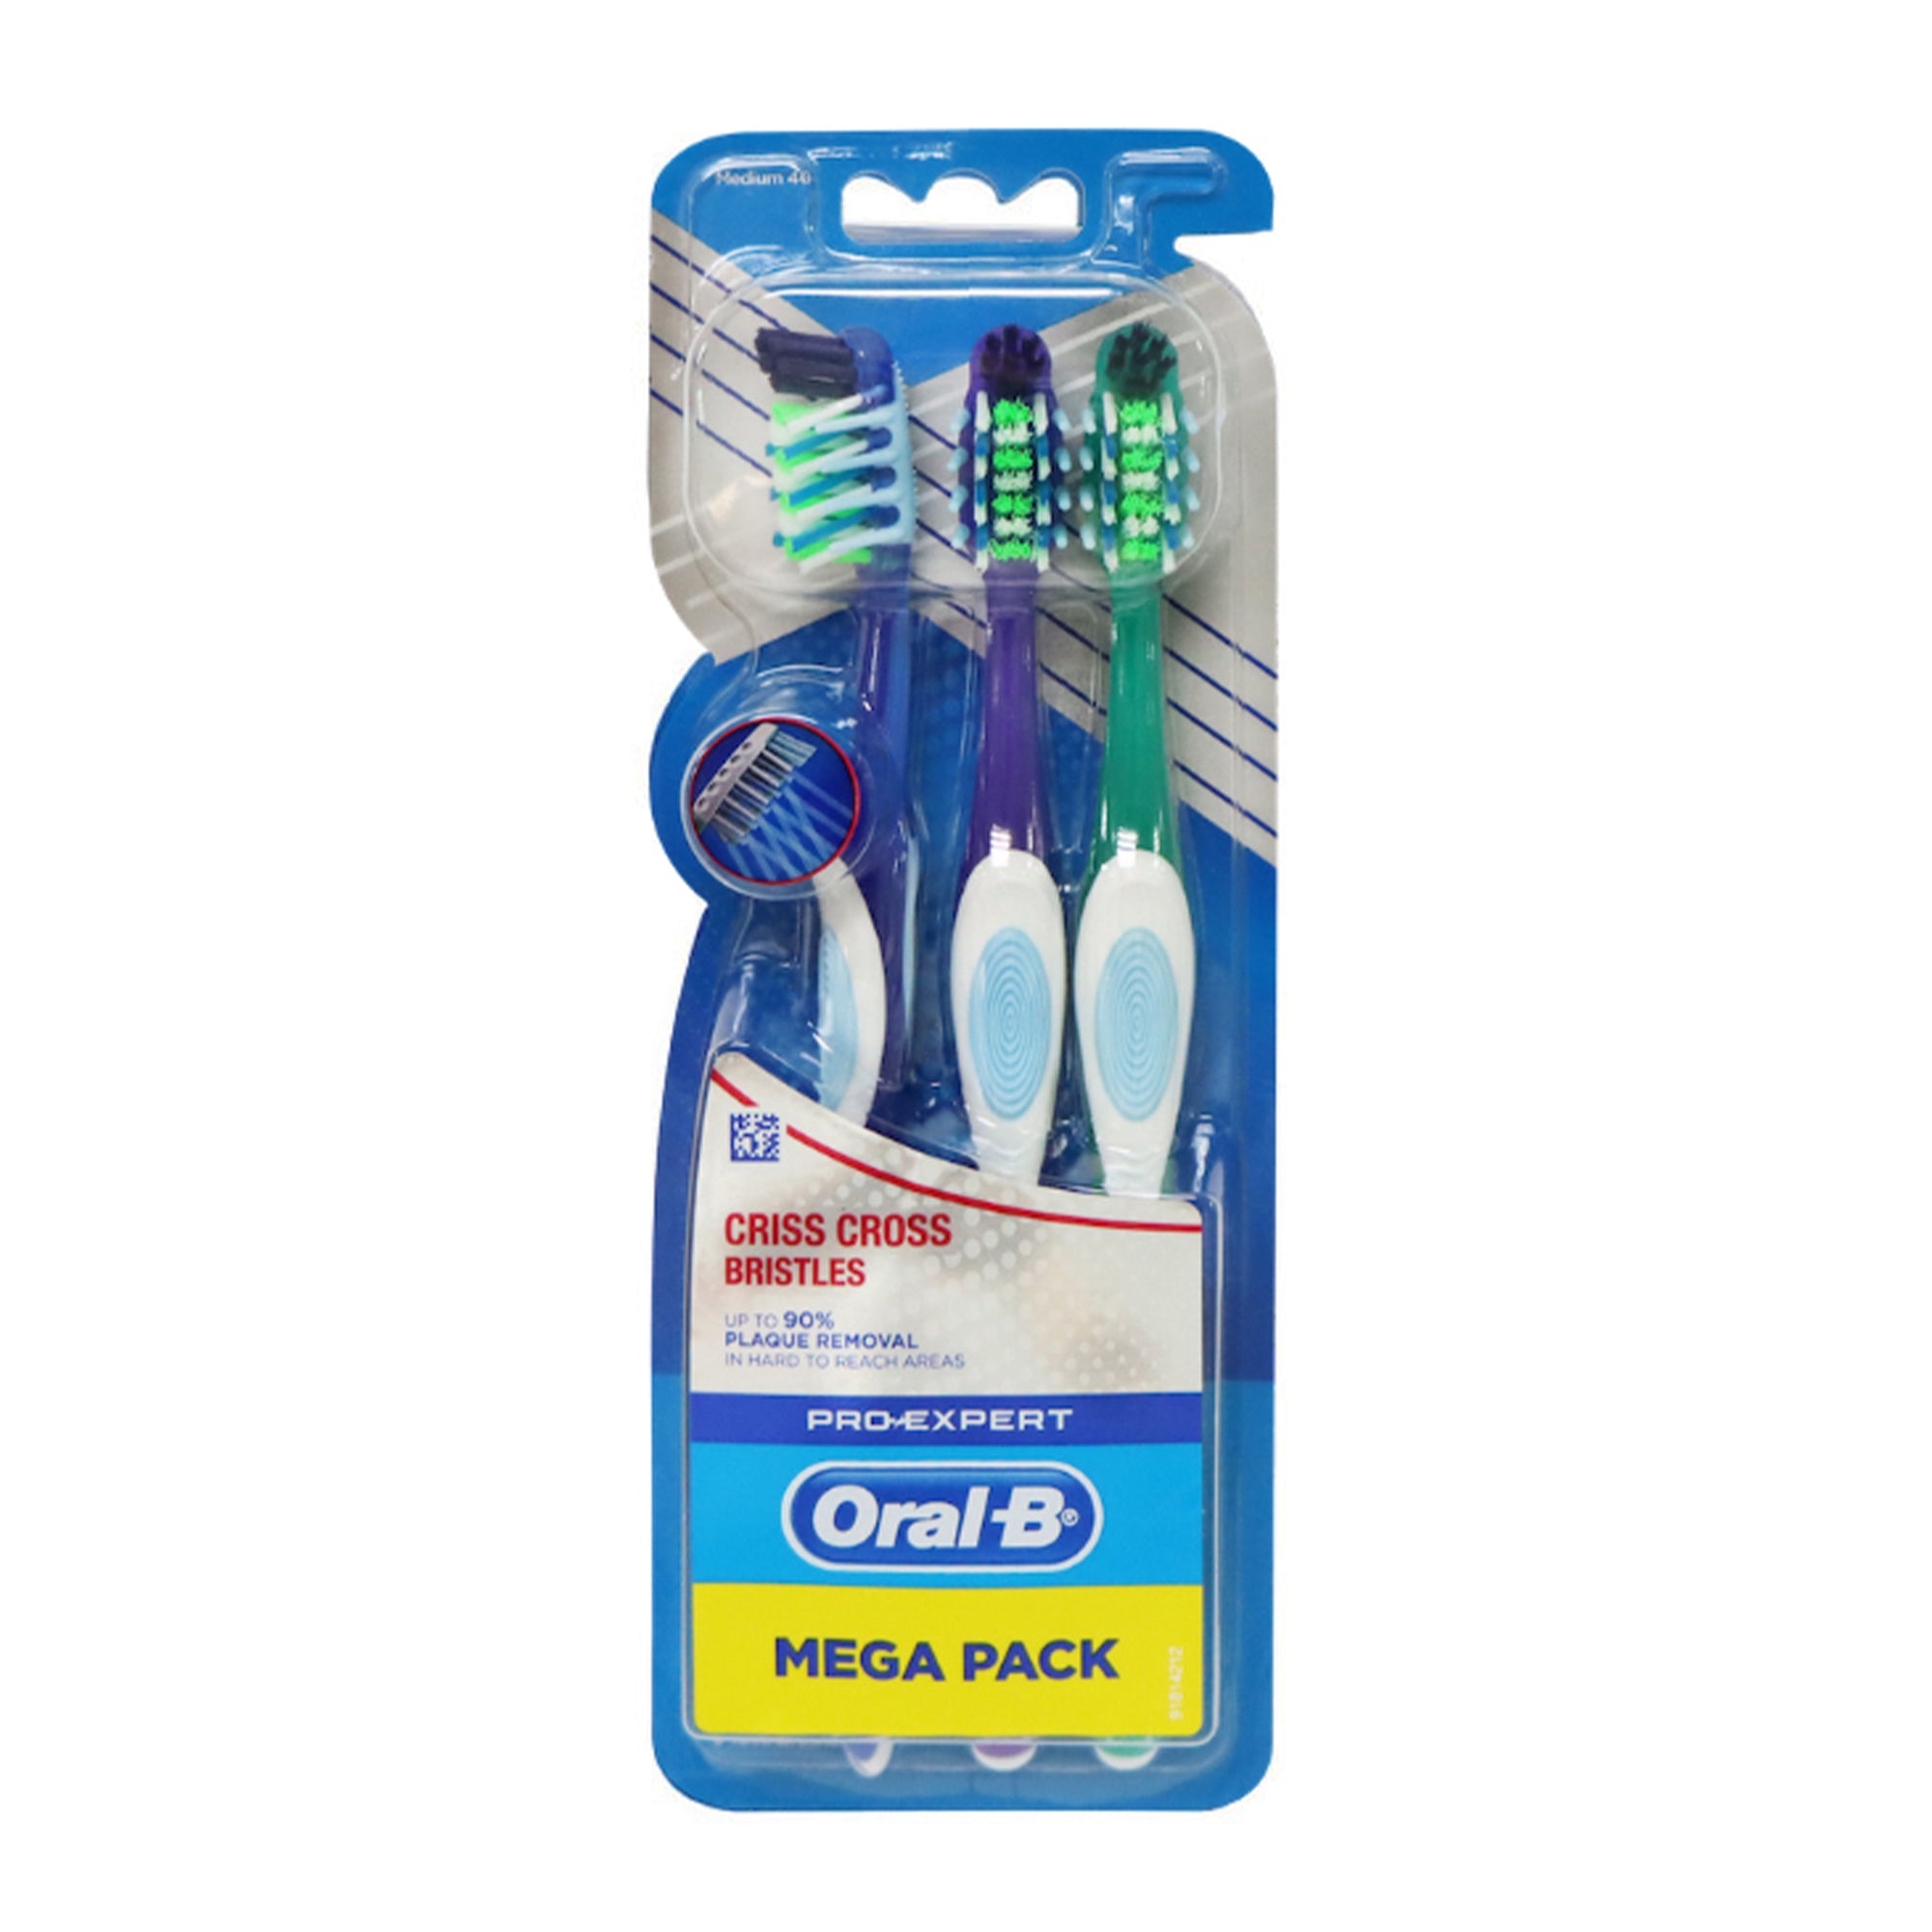 Oral-B 專業多向潔淨刷毛牙刷 3支裝 (藍色+紫色+綠色)